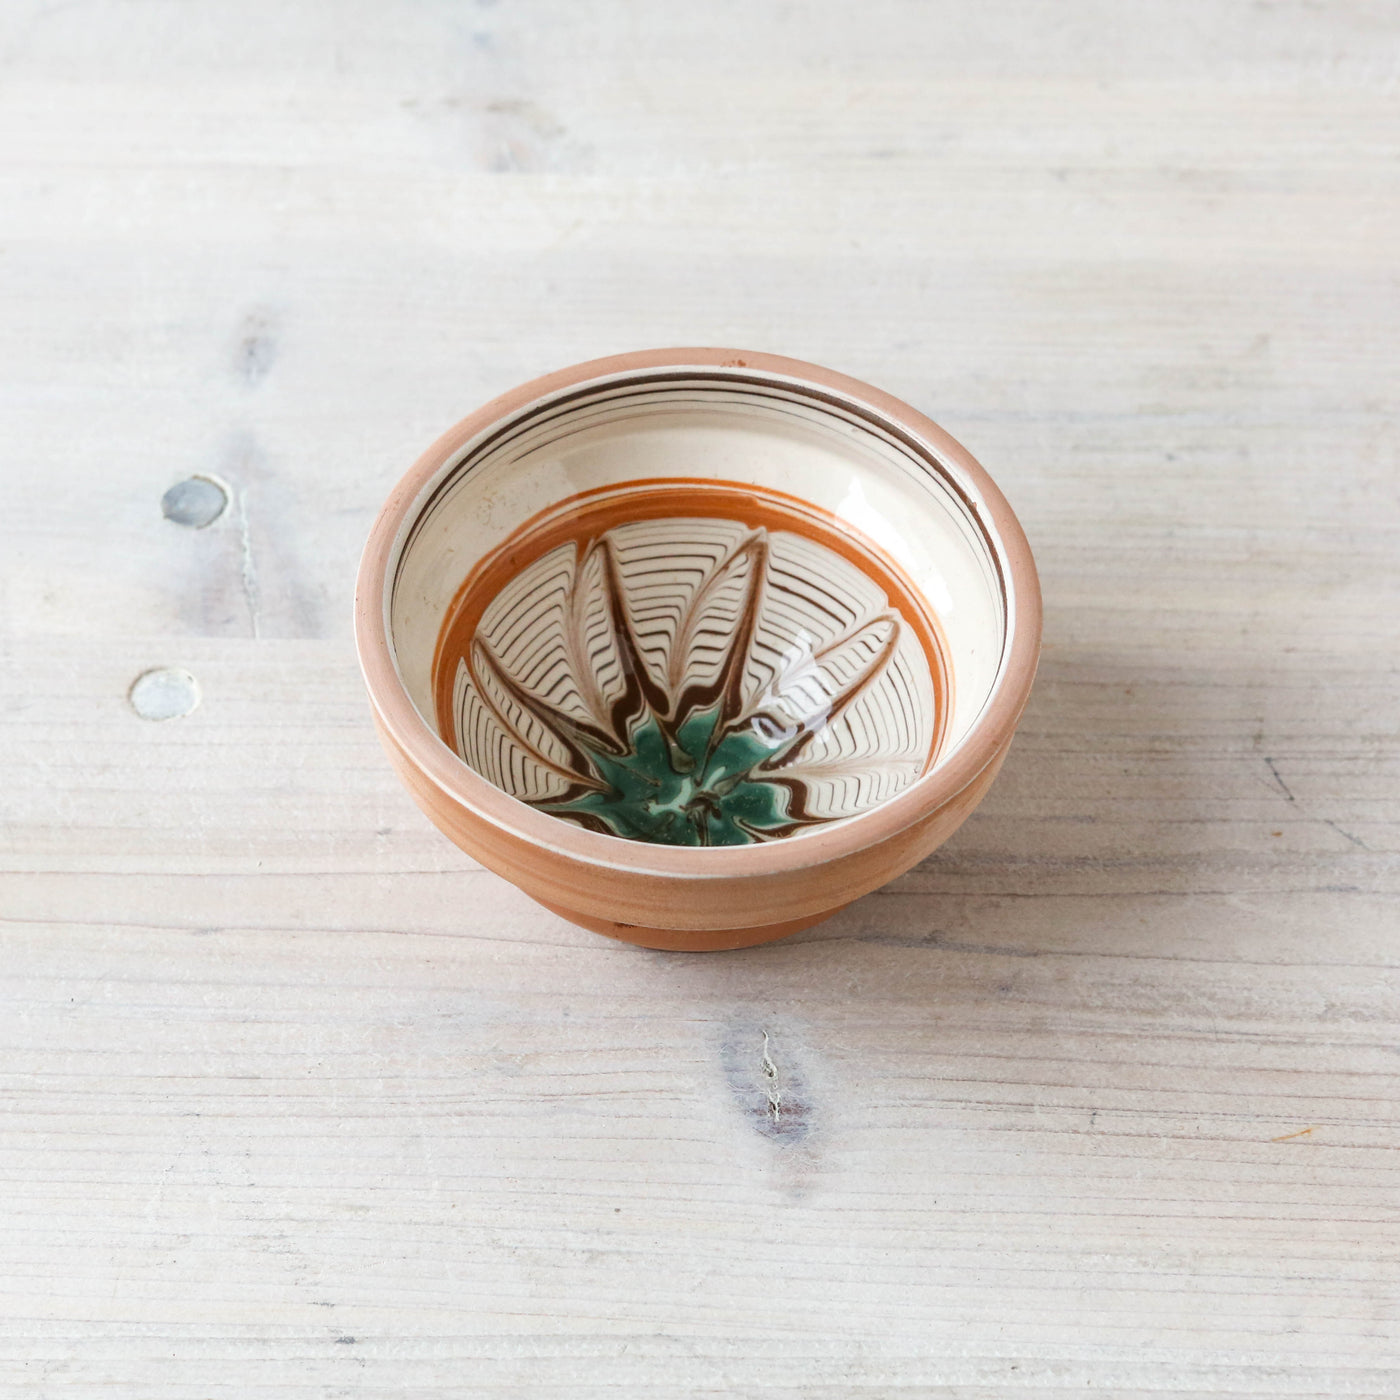 10cm Horezu Stoneware Mini Serving Bowl - Cream, Turquoise & Orange